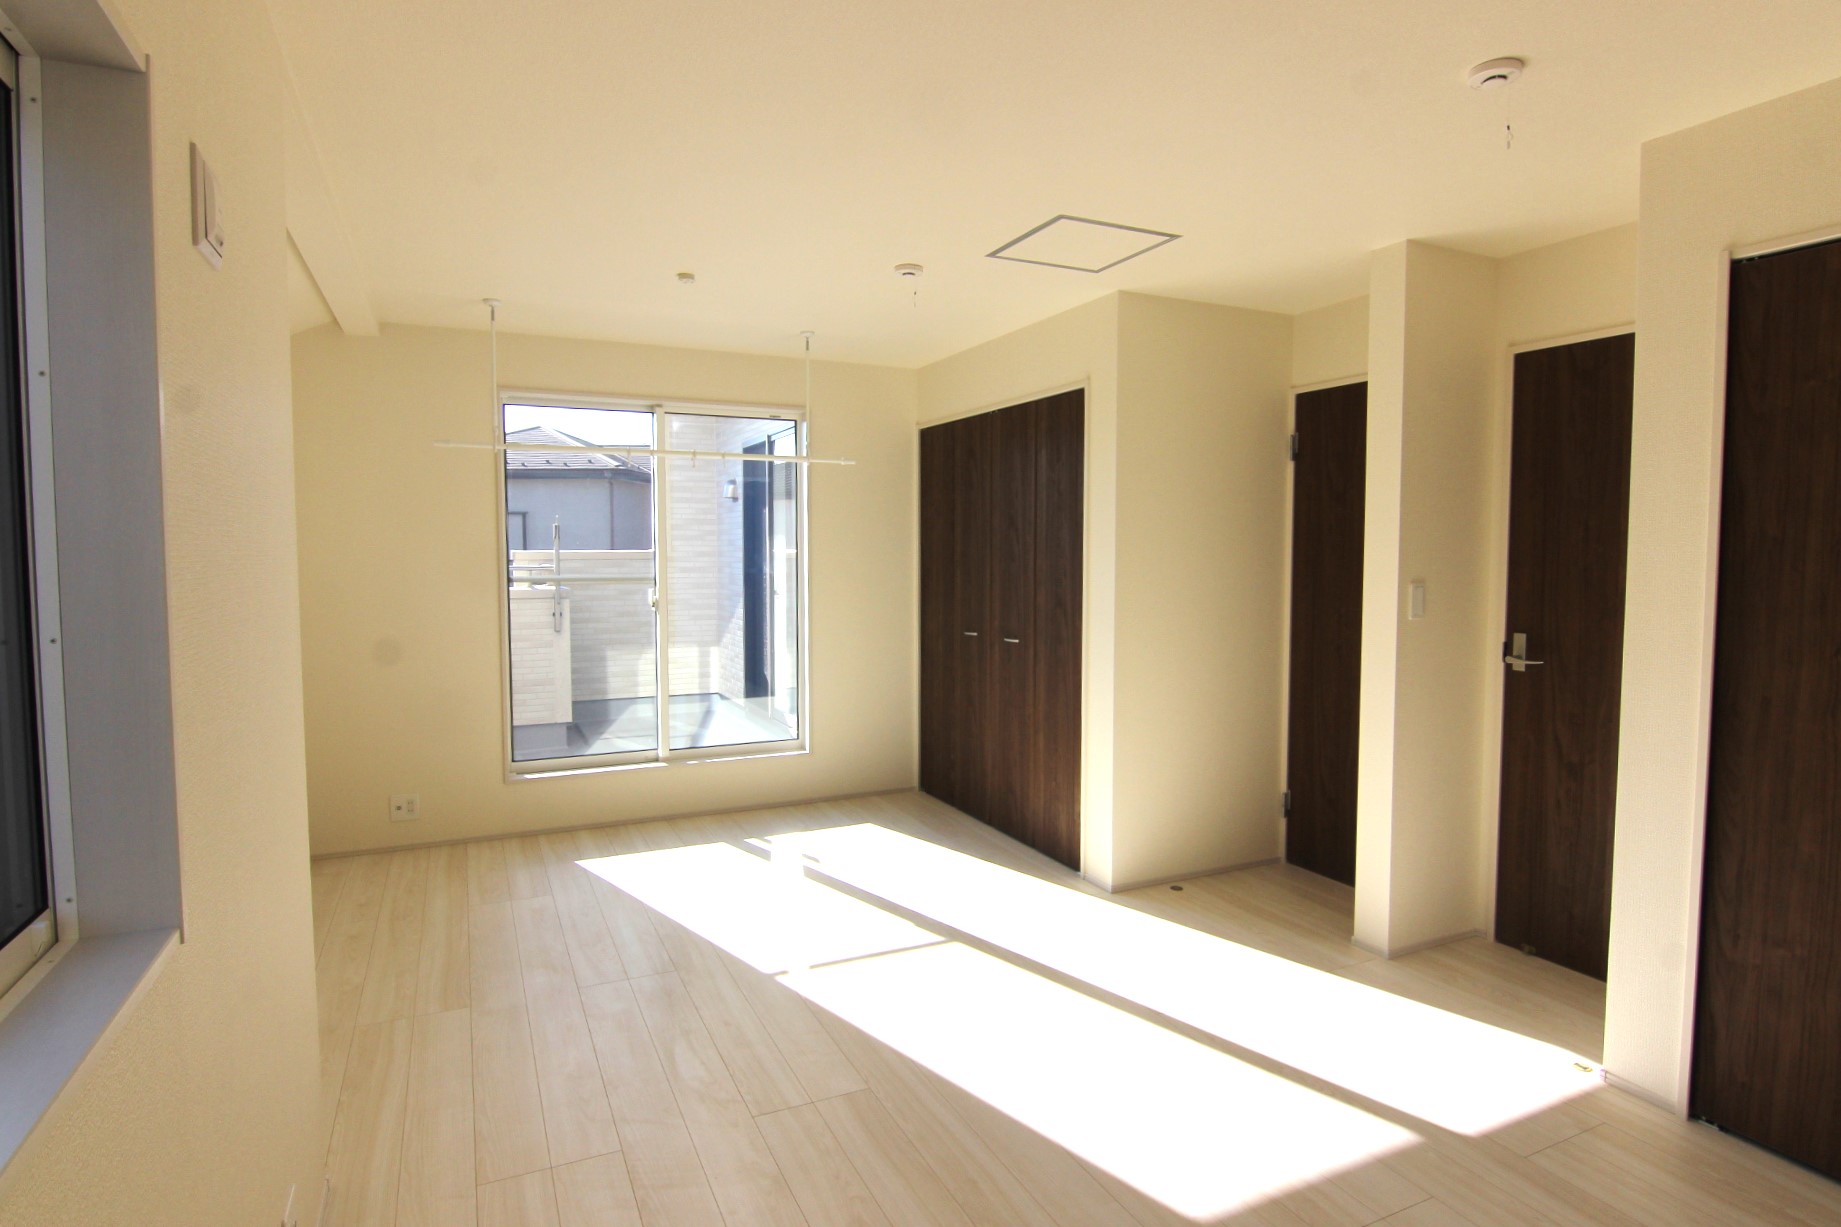 【主寝室10.26帖】　3面採光で白の木目の明るい室内。収納×2・室内物干し付き。家族構成に合わせて部屋を分割可能な4LDK可変型プラン採用!※壁の設置は別途有料になります